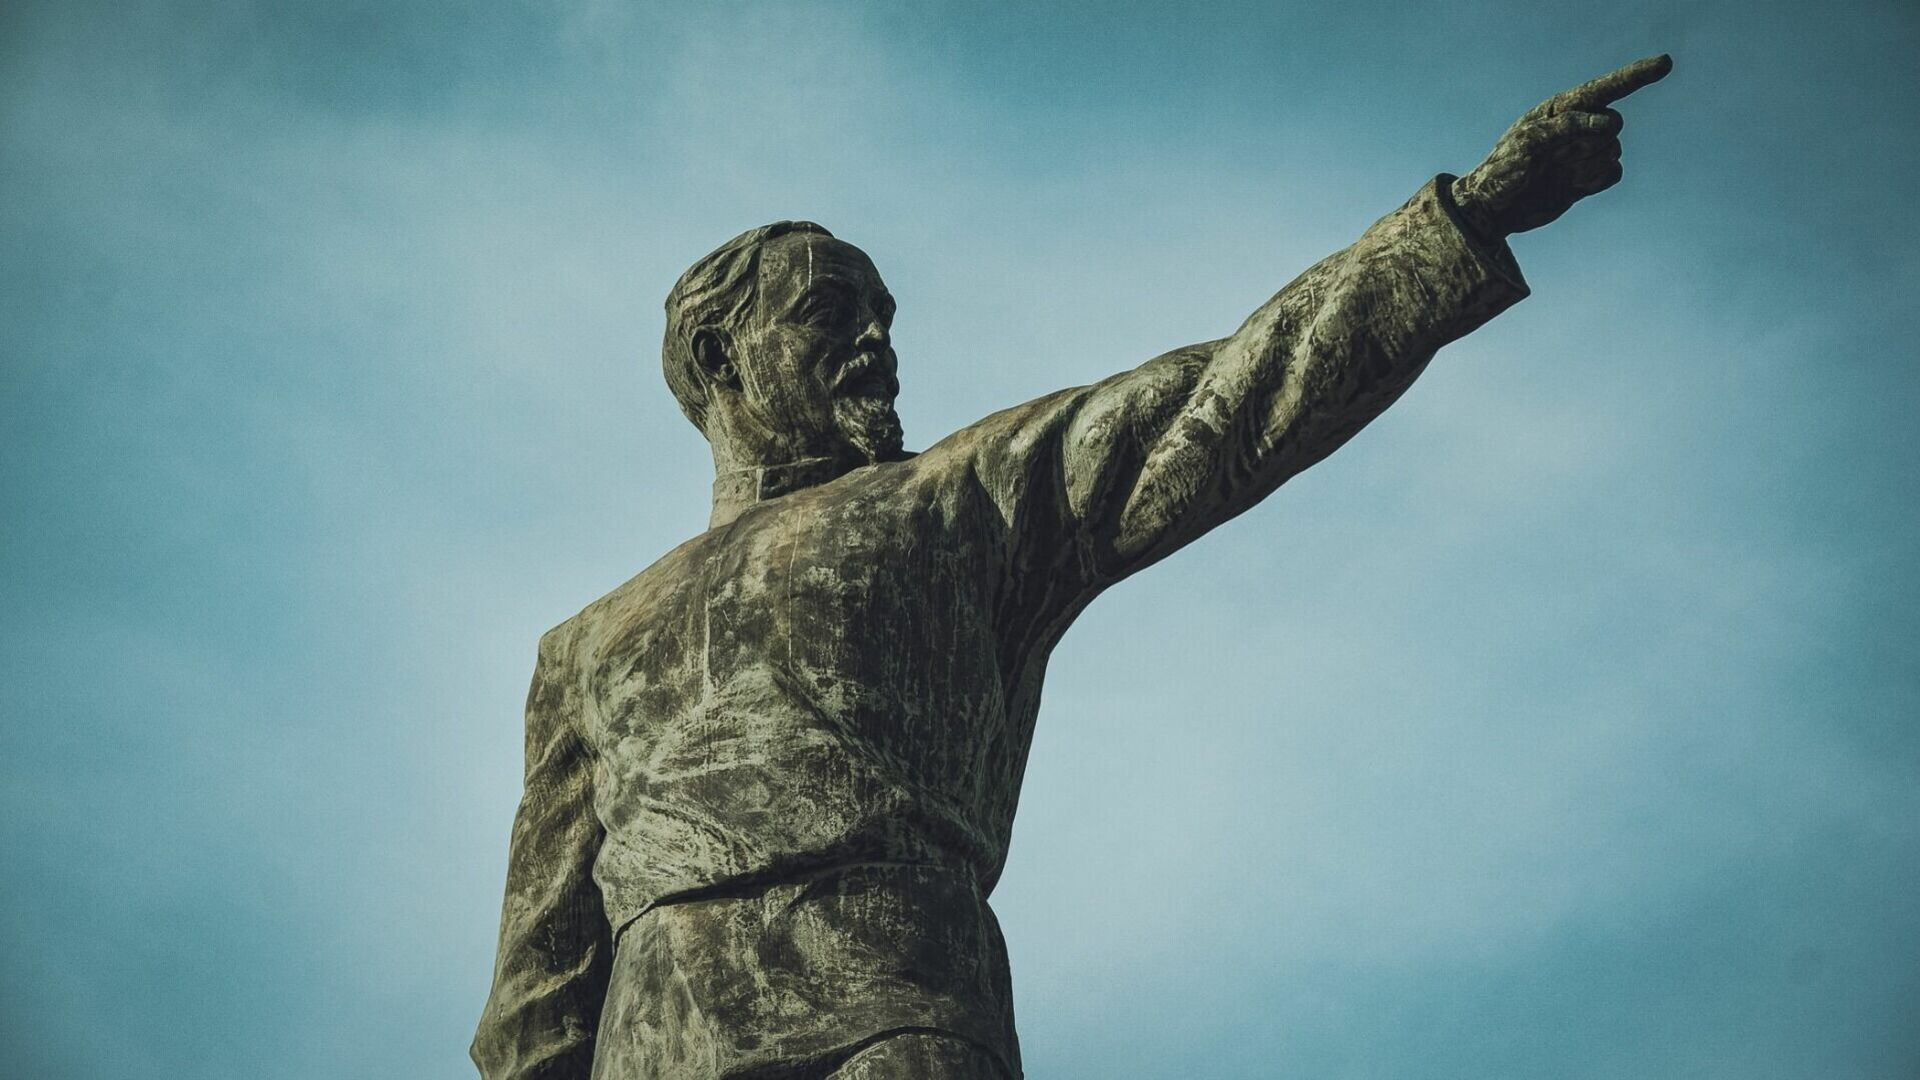 Памятник Феликсу Дзержинскому нужно очистить и покрыть защитным составом